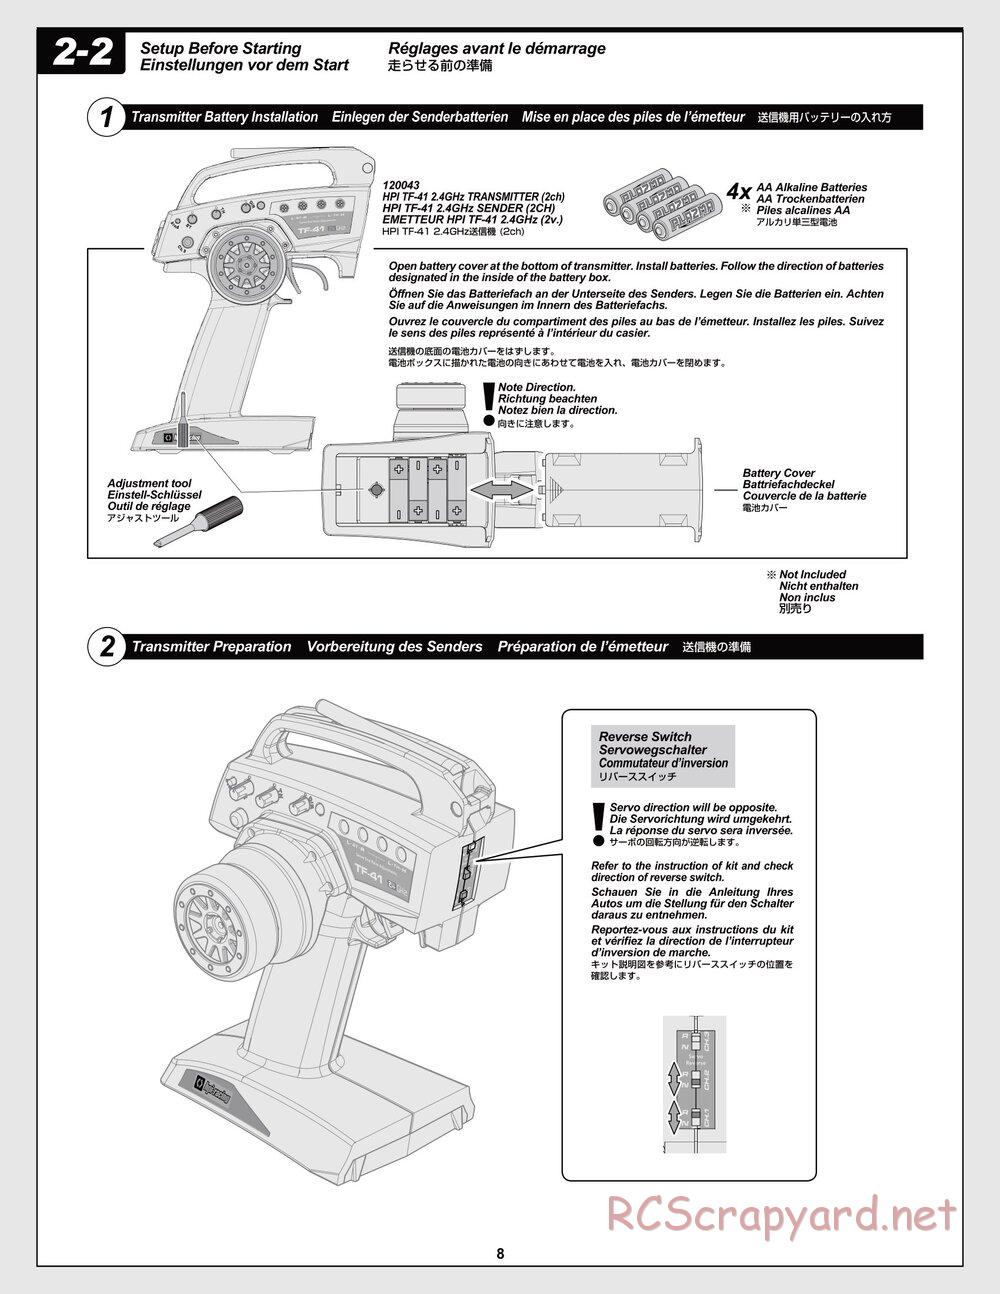 HPI - Jumpshot SC / ST V2 - Manual - Page 8